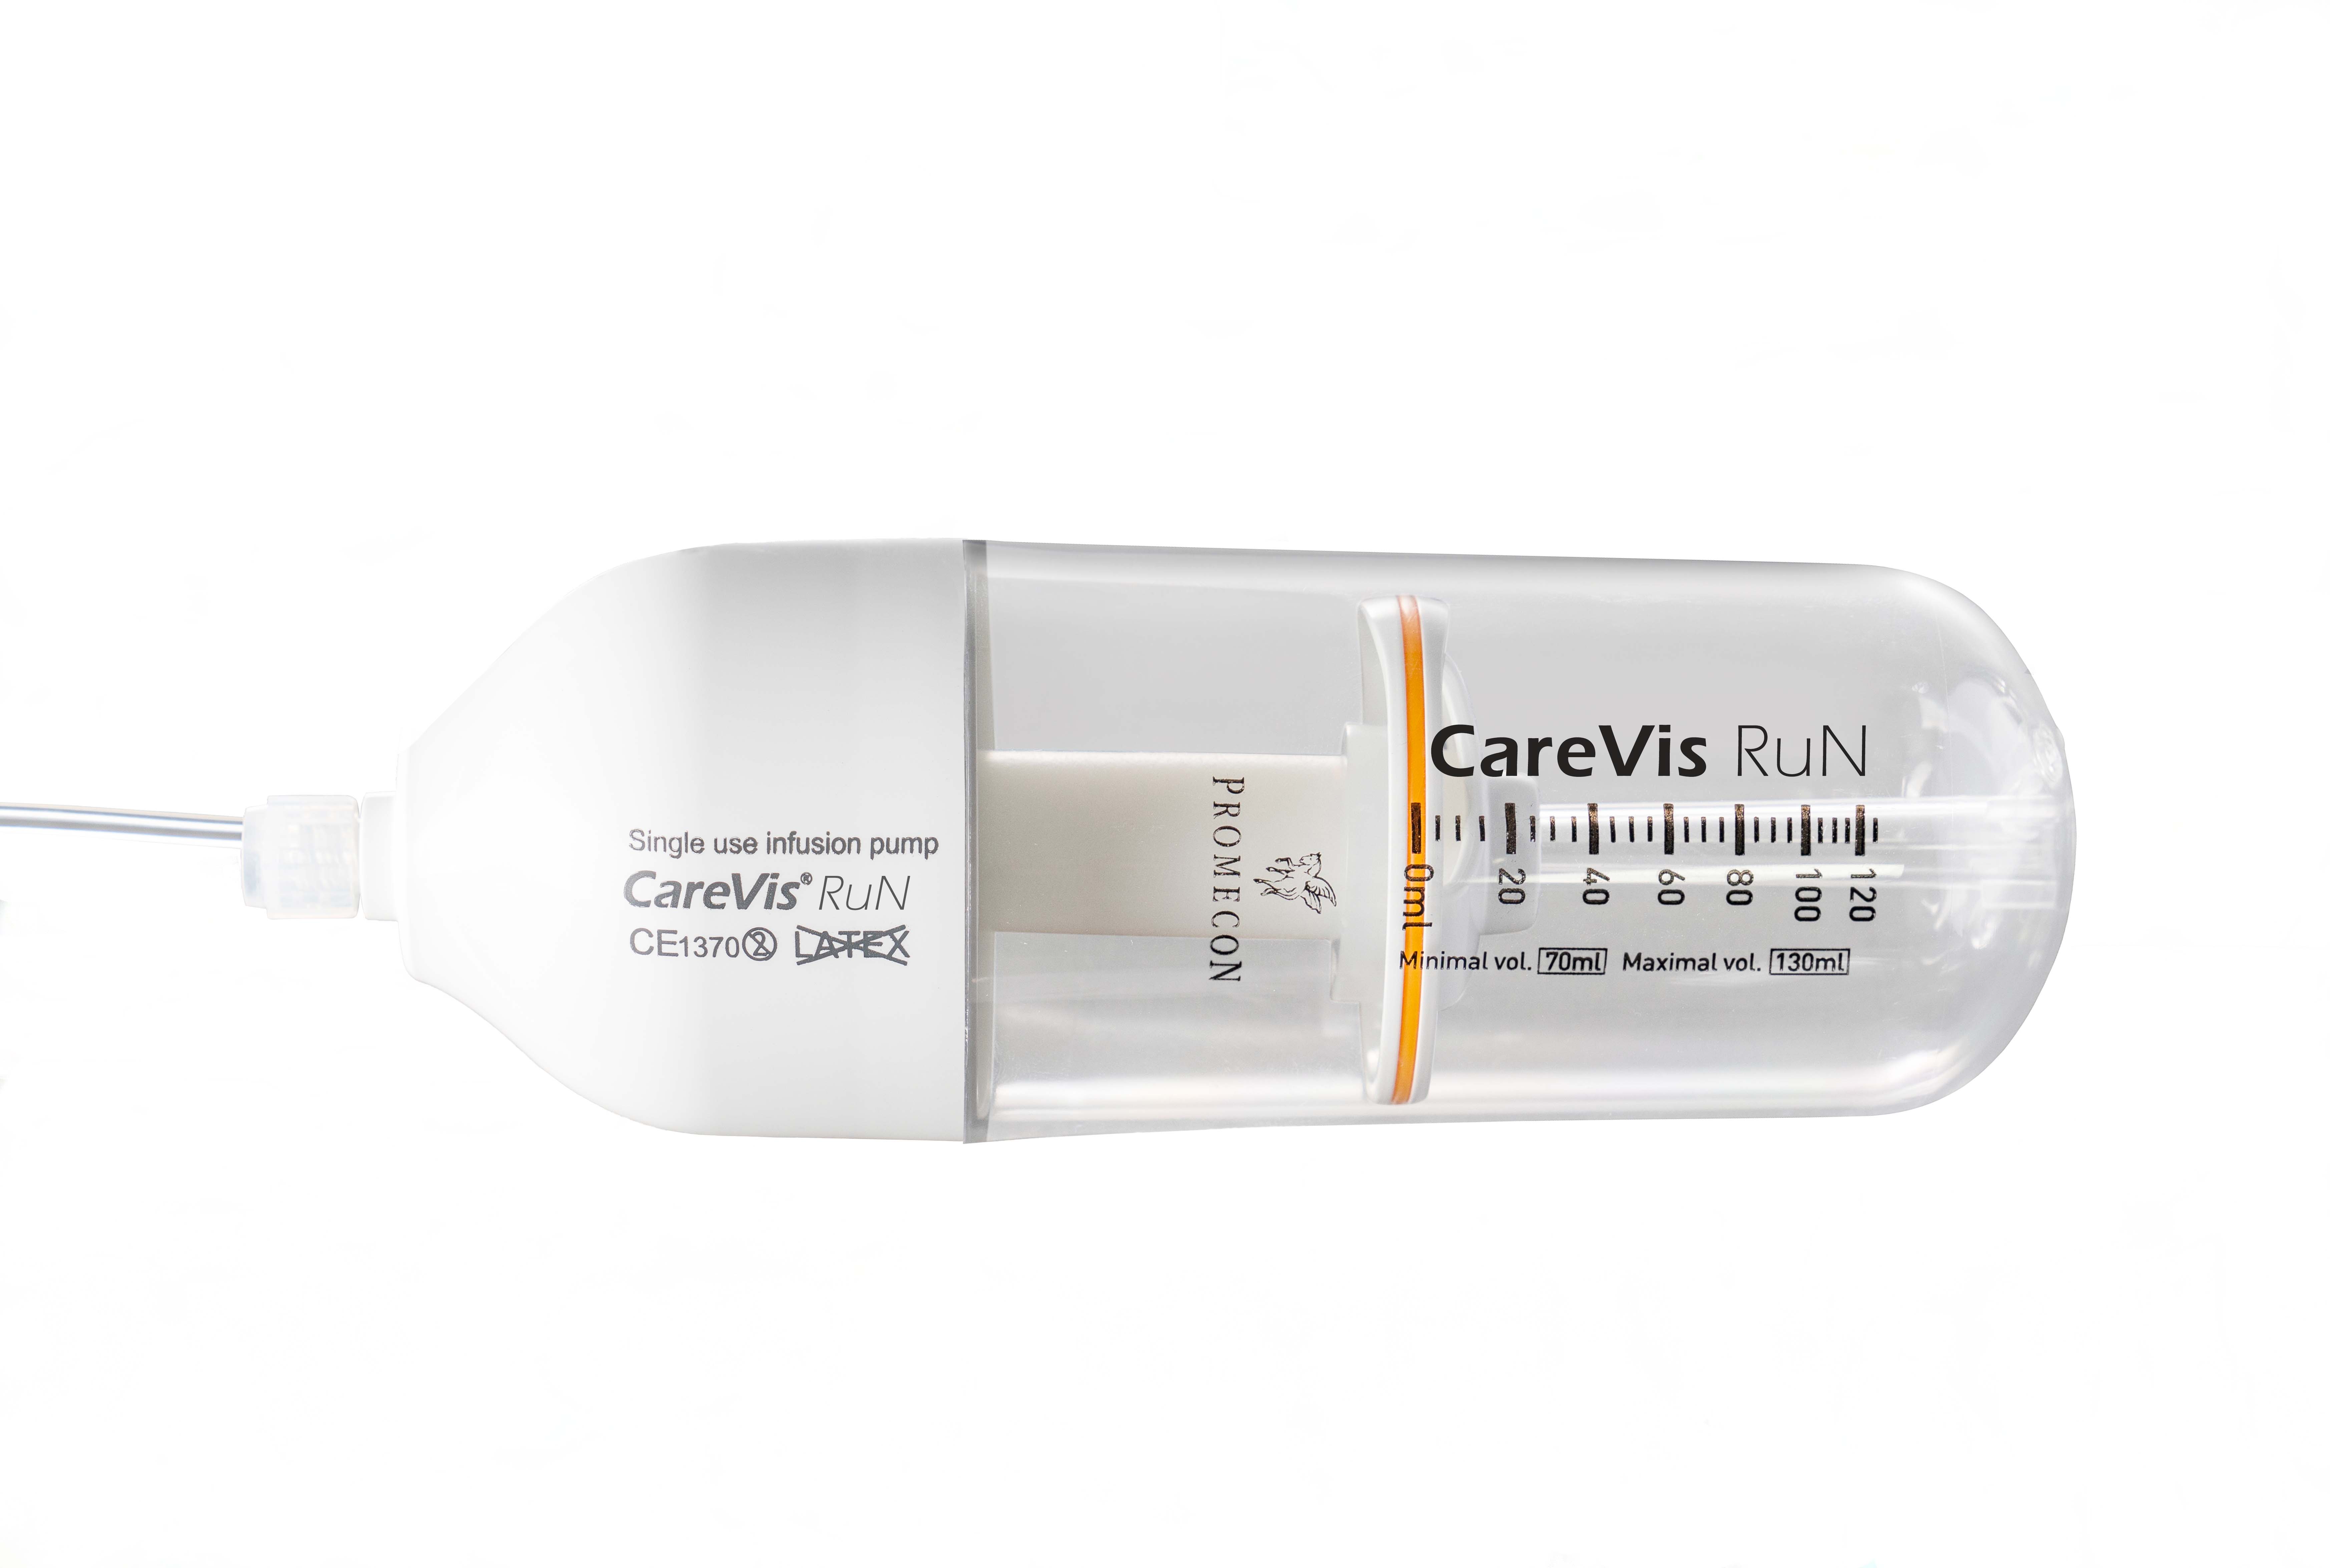 elastomeric-pump-antibiotic-therapy-carevis-run-1